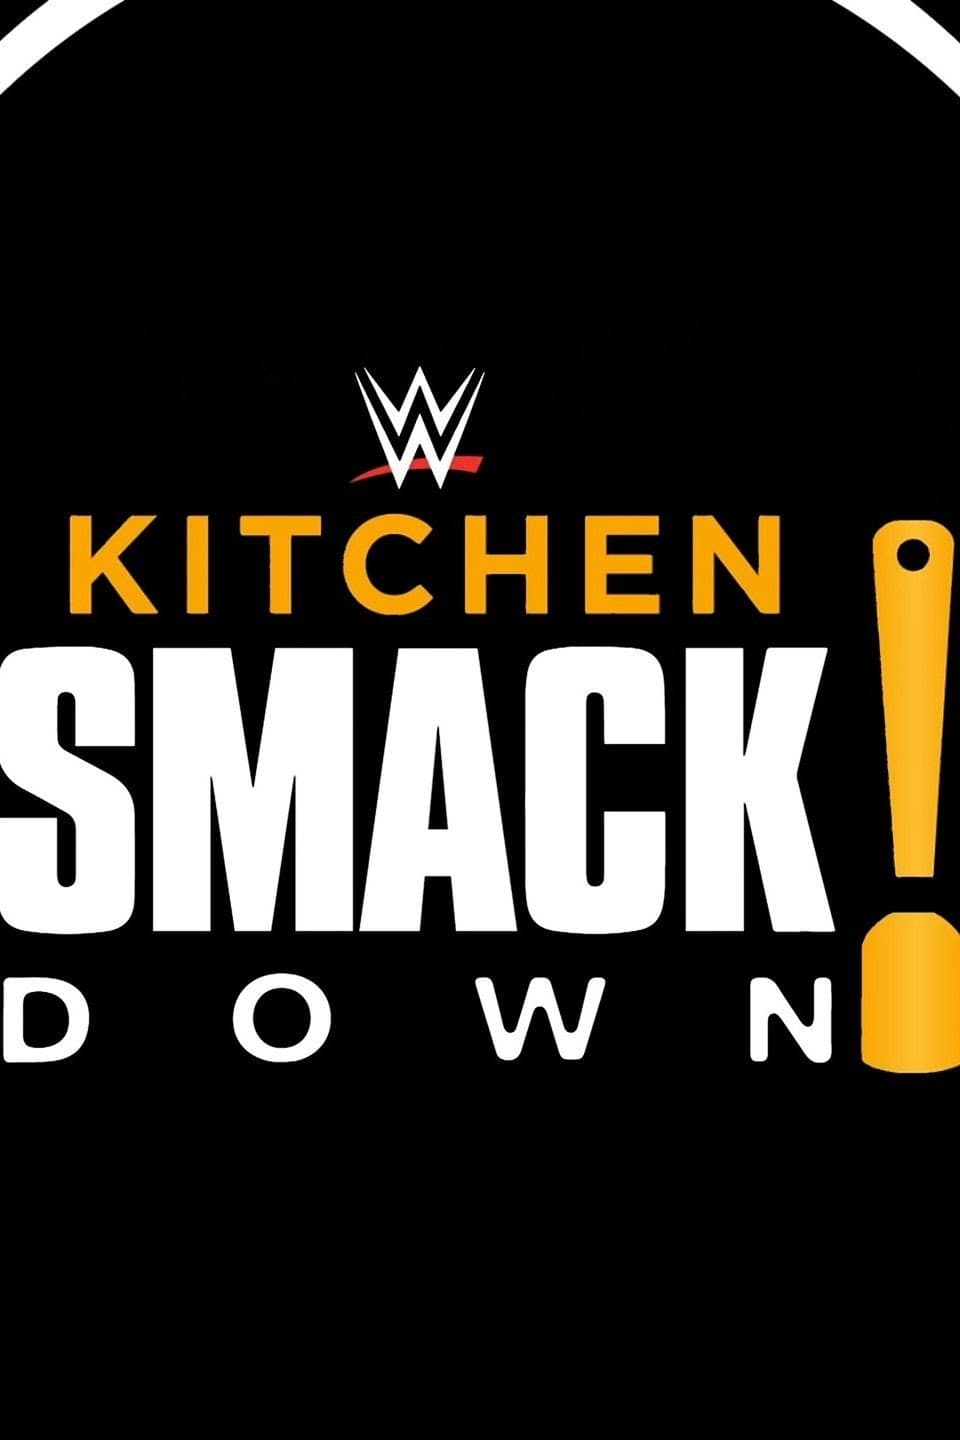 WWE Kitchen SmackDown!